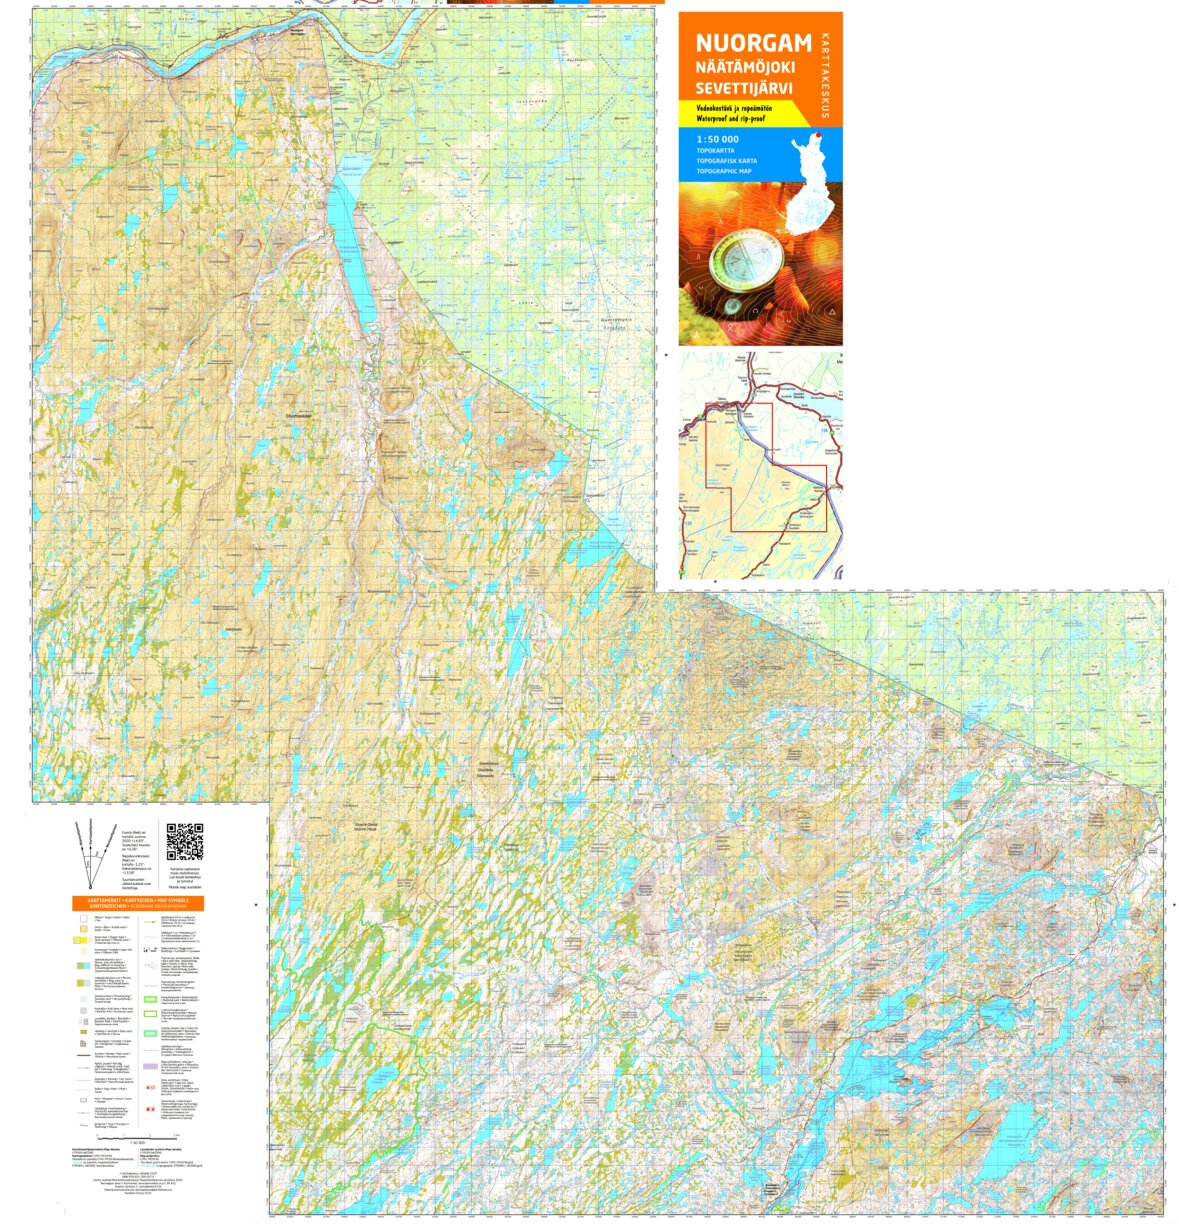 Nuorgam Näätämöjoki Sevettijärvi, Topokartta 1:50 000 map by Tapio Palvelut  Oy / Karttakeskus - Avenza Maps | Avenza Maps